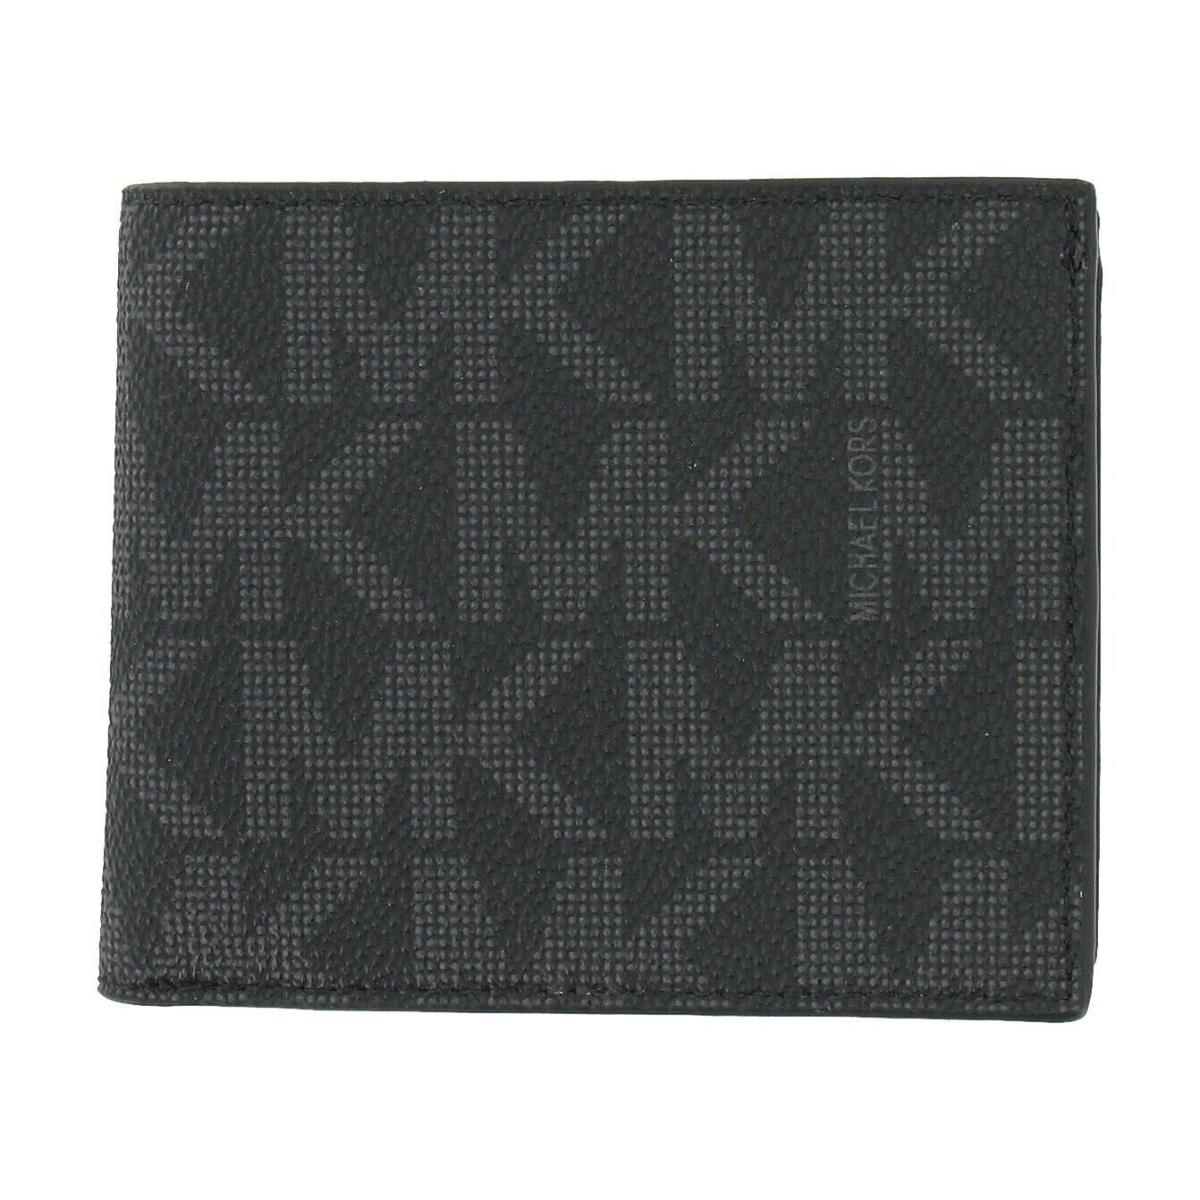 Michael Kors Jet Set Leather Billfold Slim Mens Wallet Size Color Black